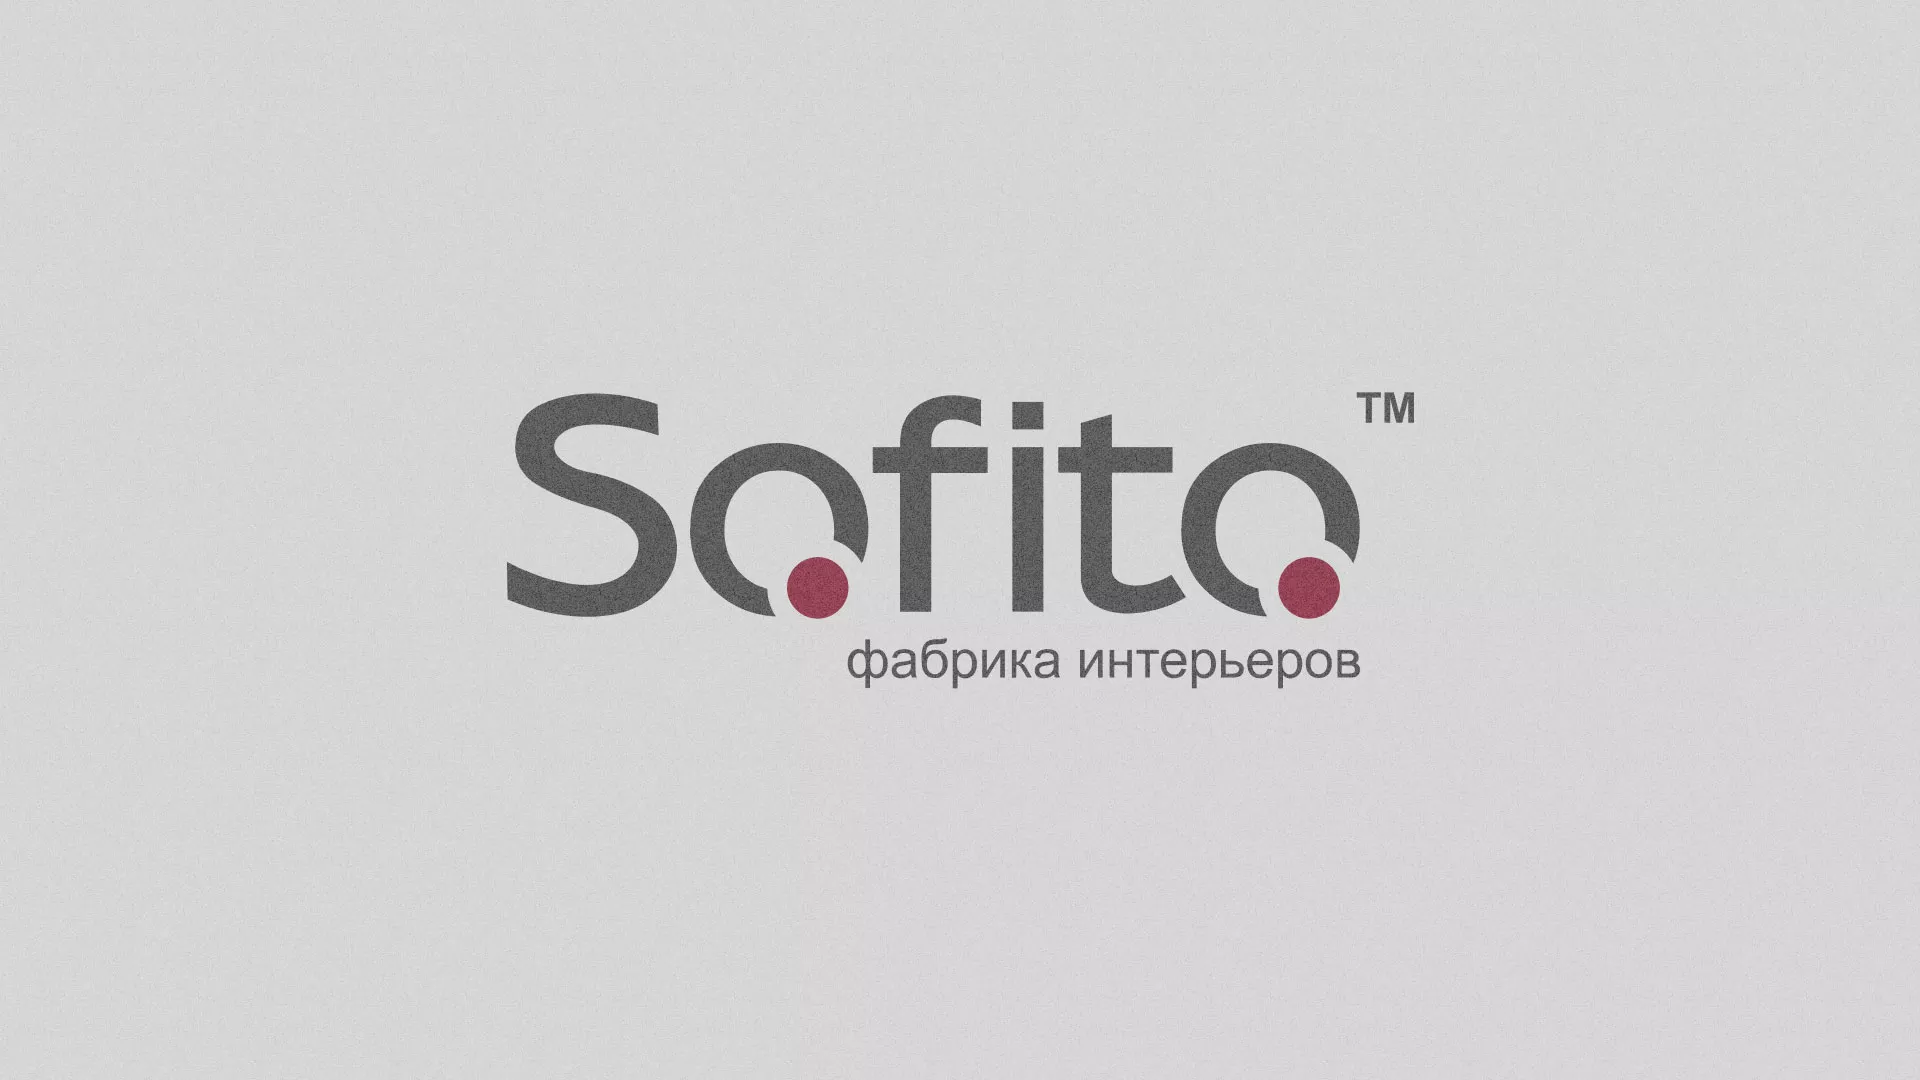 Создание сайта по натяжным потолкам для компании «Софито» в Грязовце